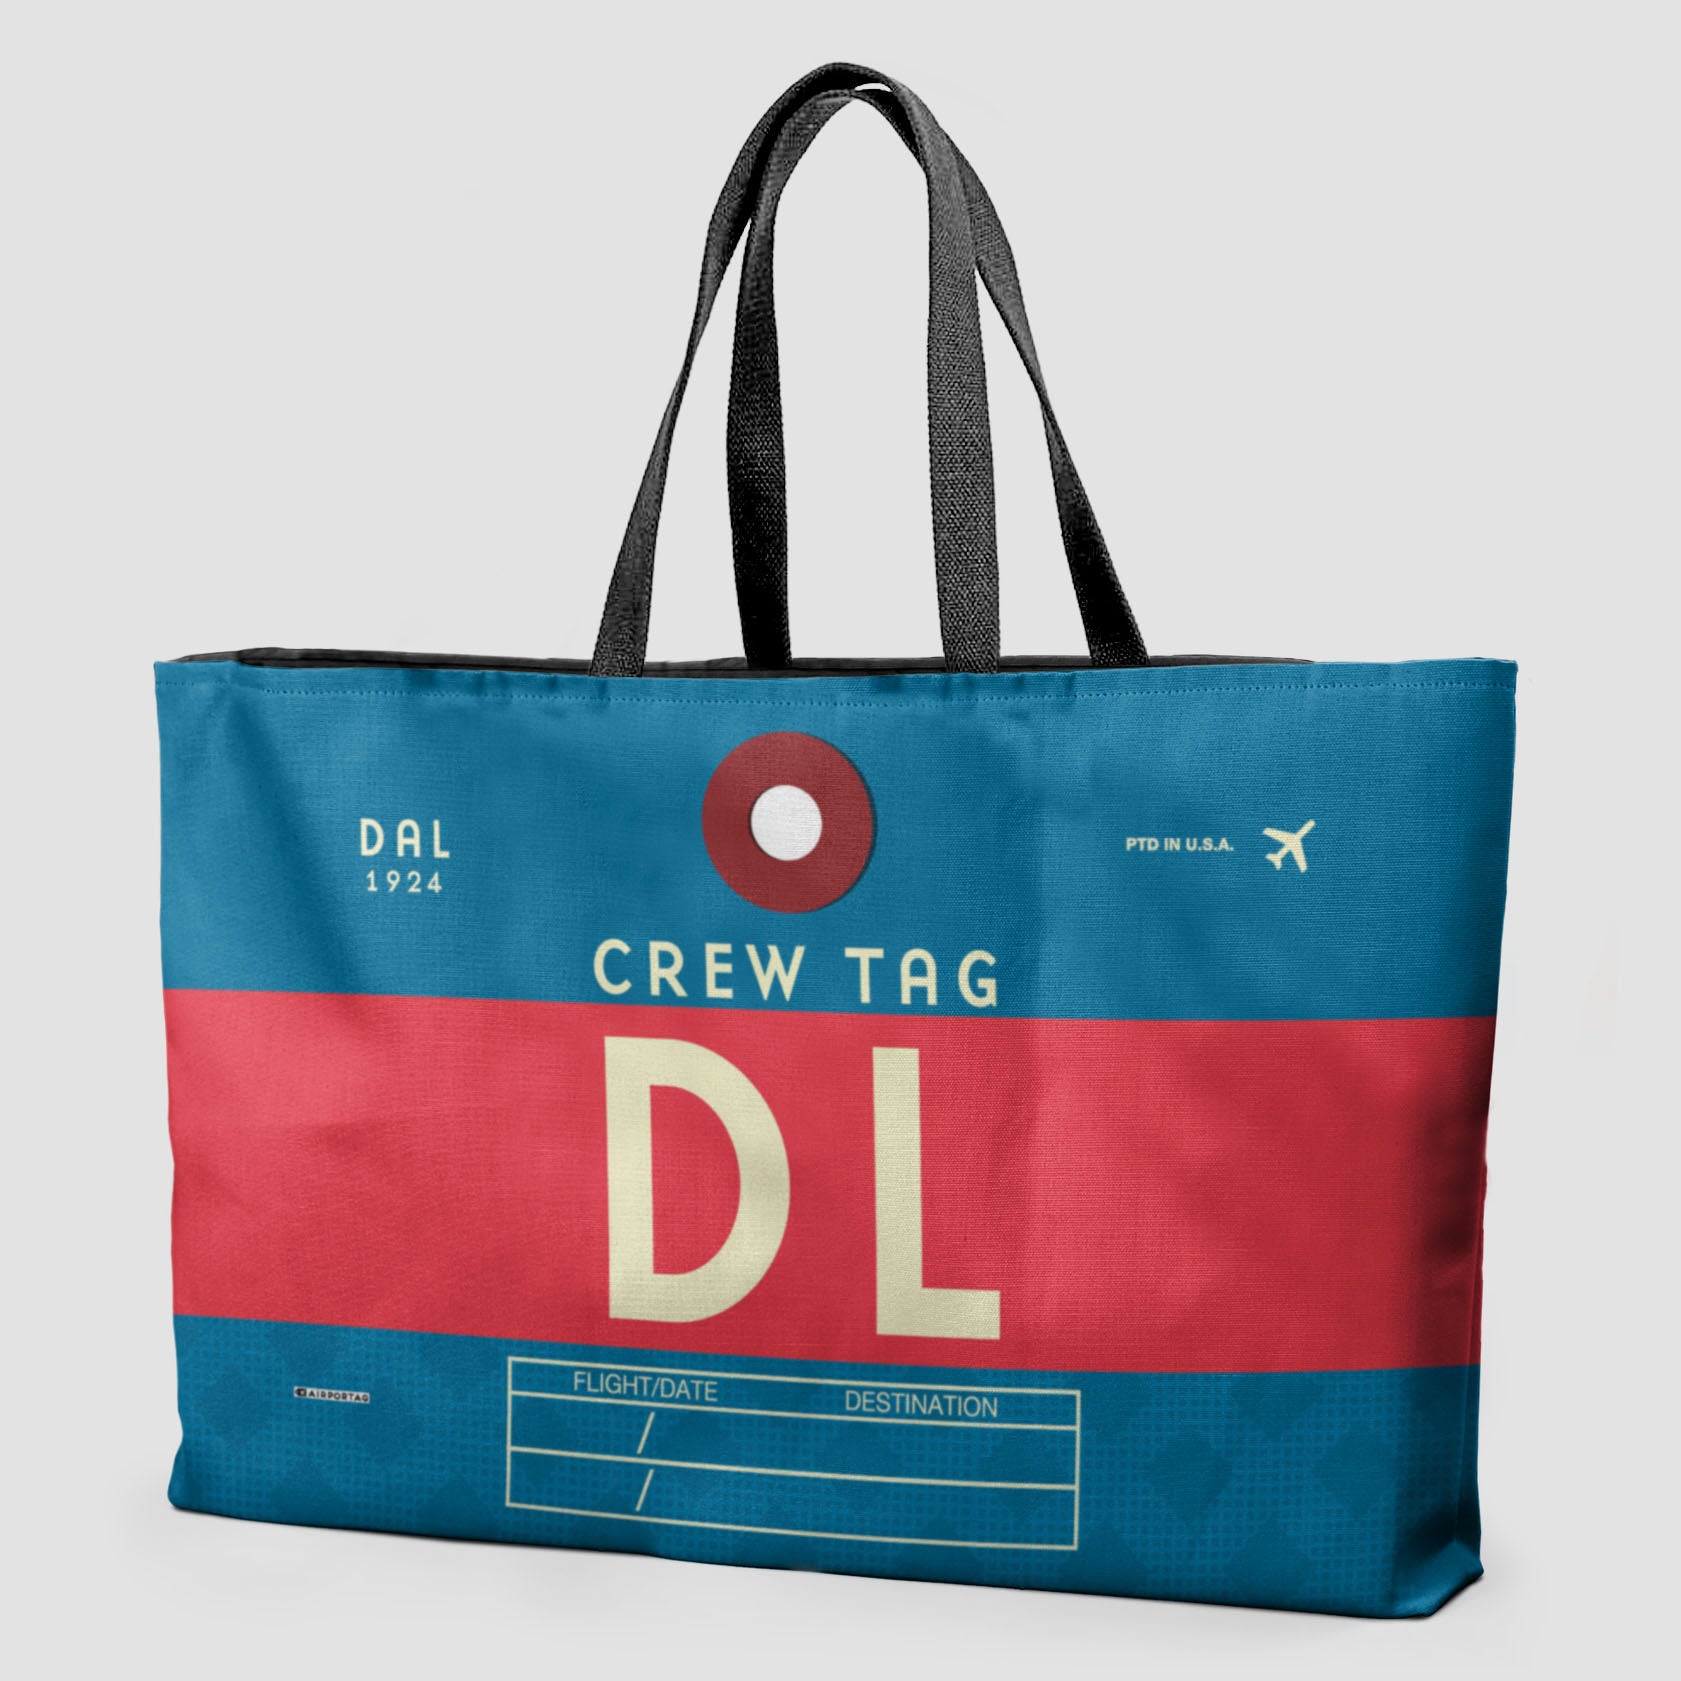 DL - Weekender Bag - Airportag